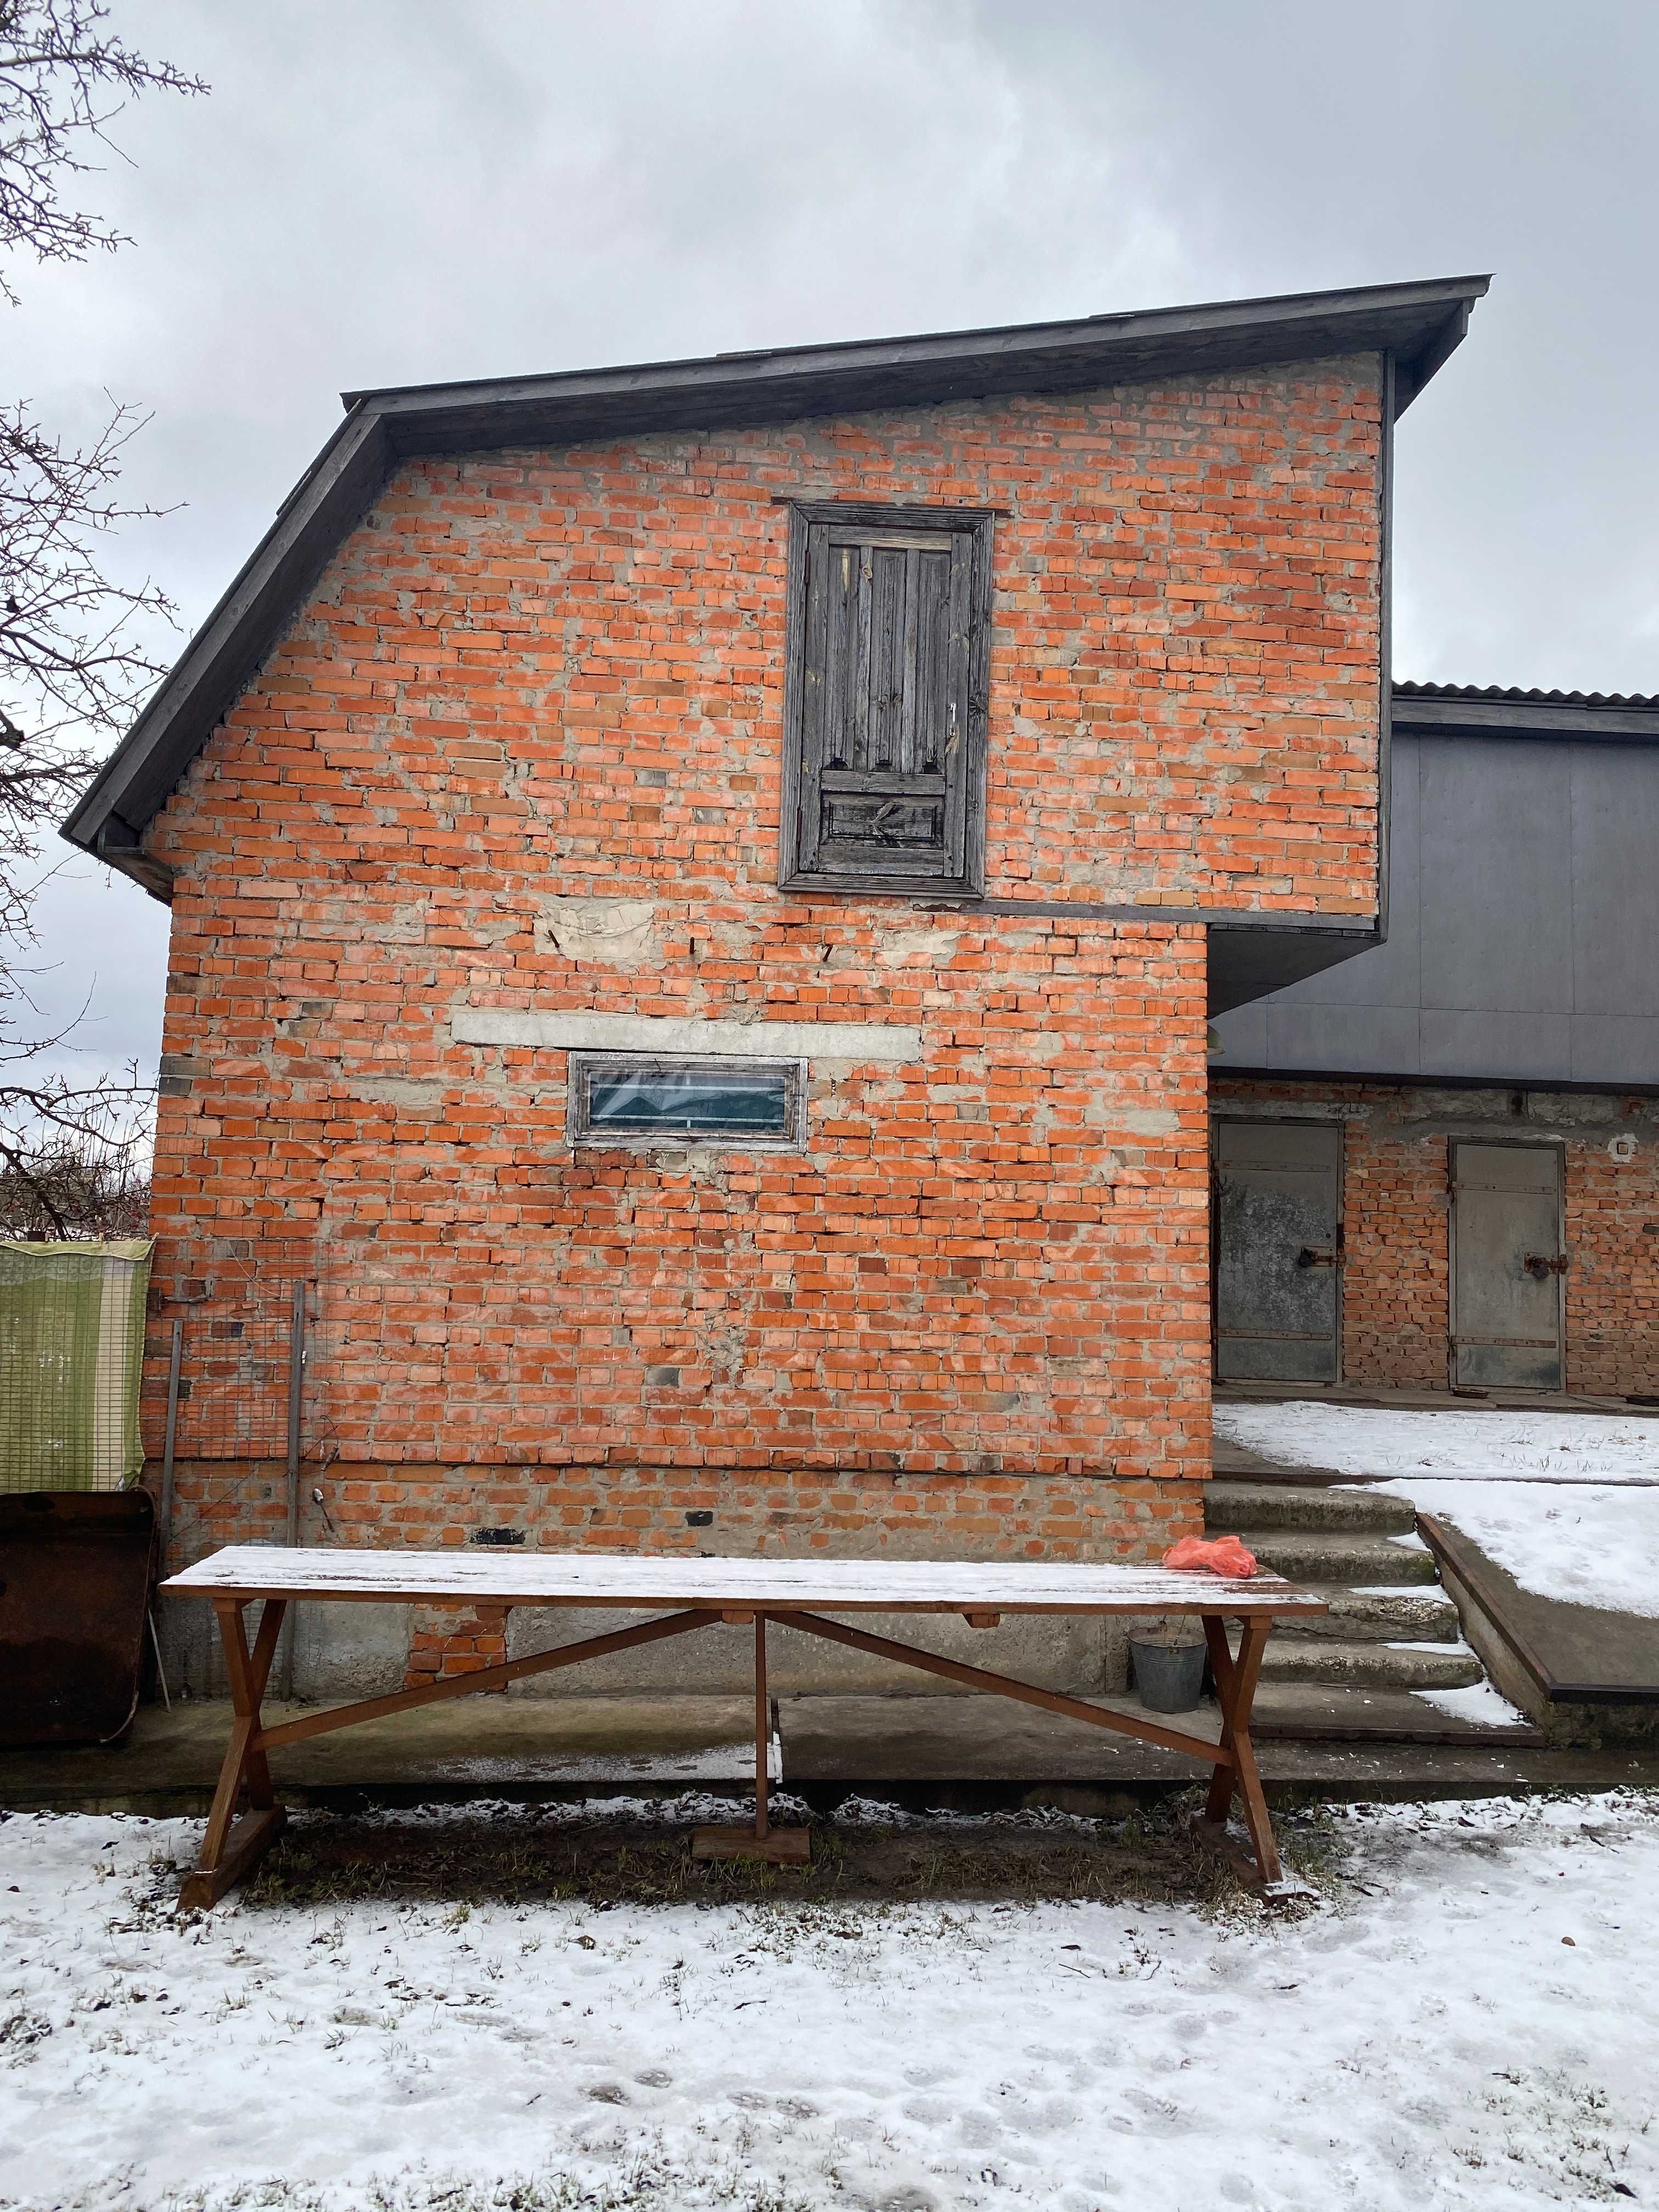 Продам будинок 150 км від Києва (Ічня, національний природний парк)